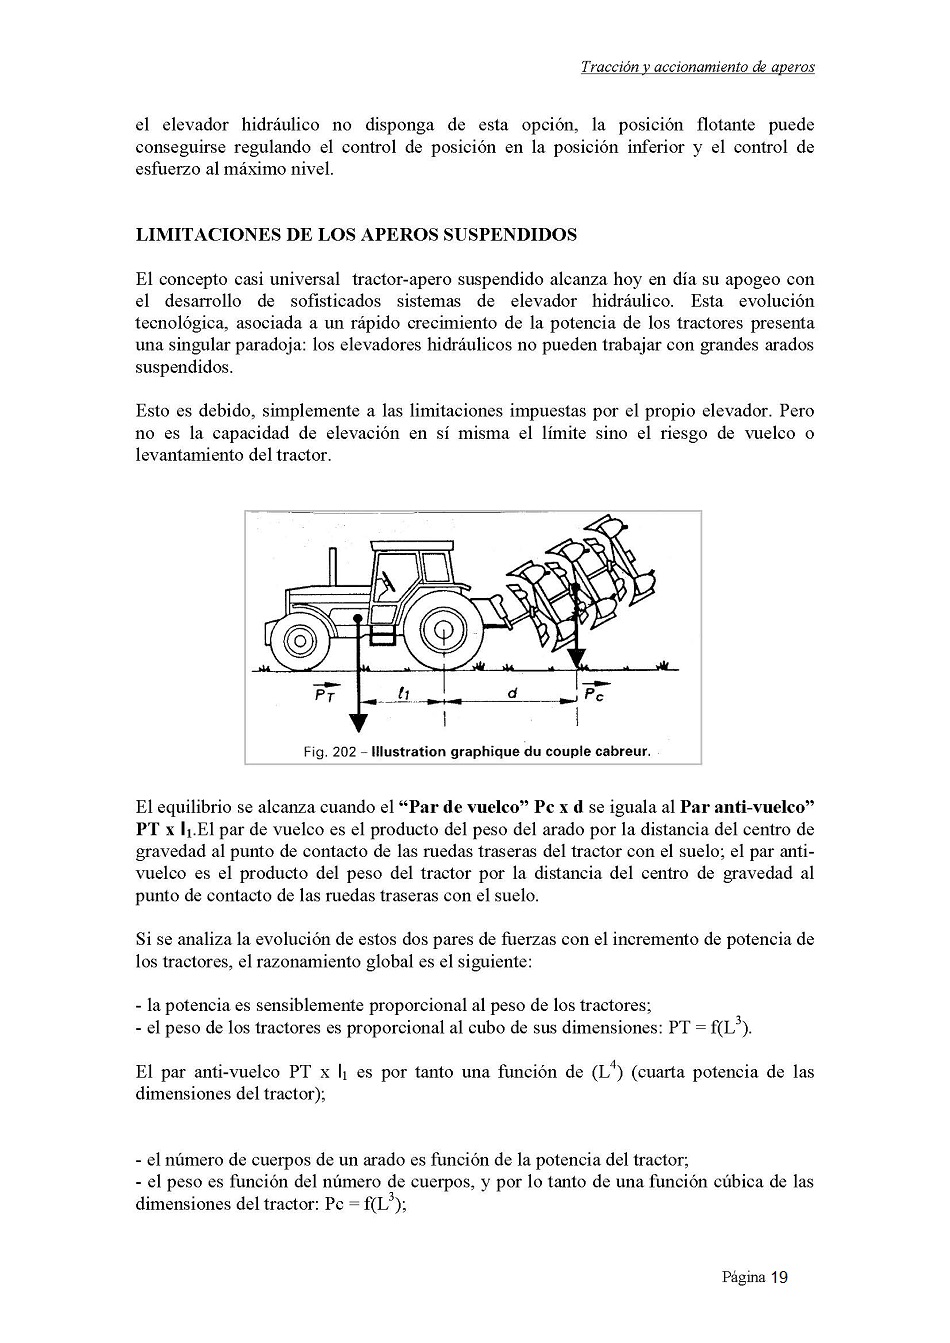 Estudio de los tractores y de maquinaria agrícola. Página 19